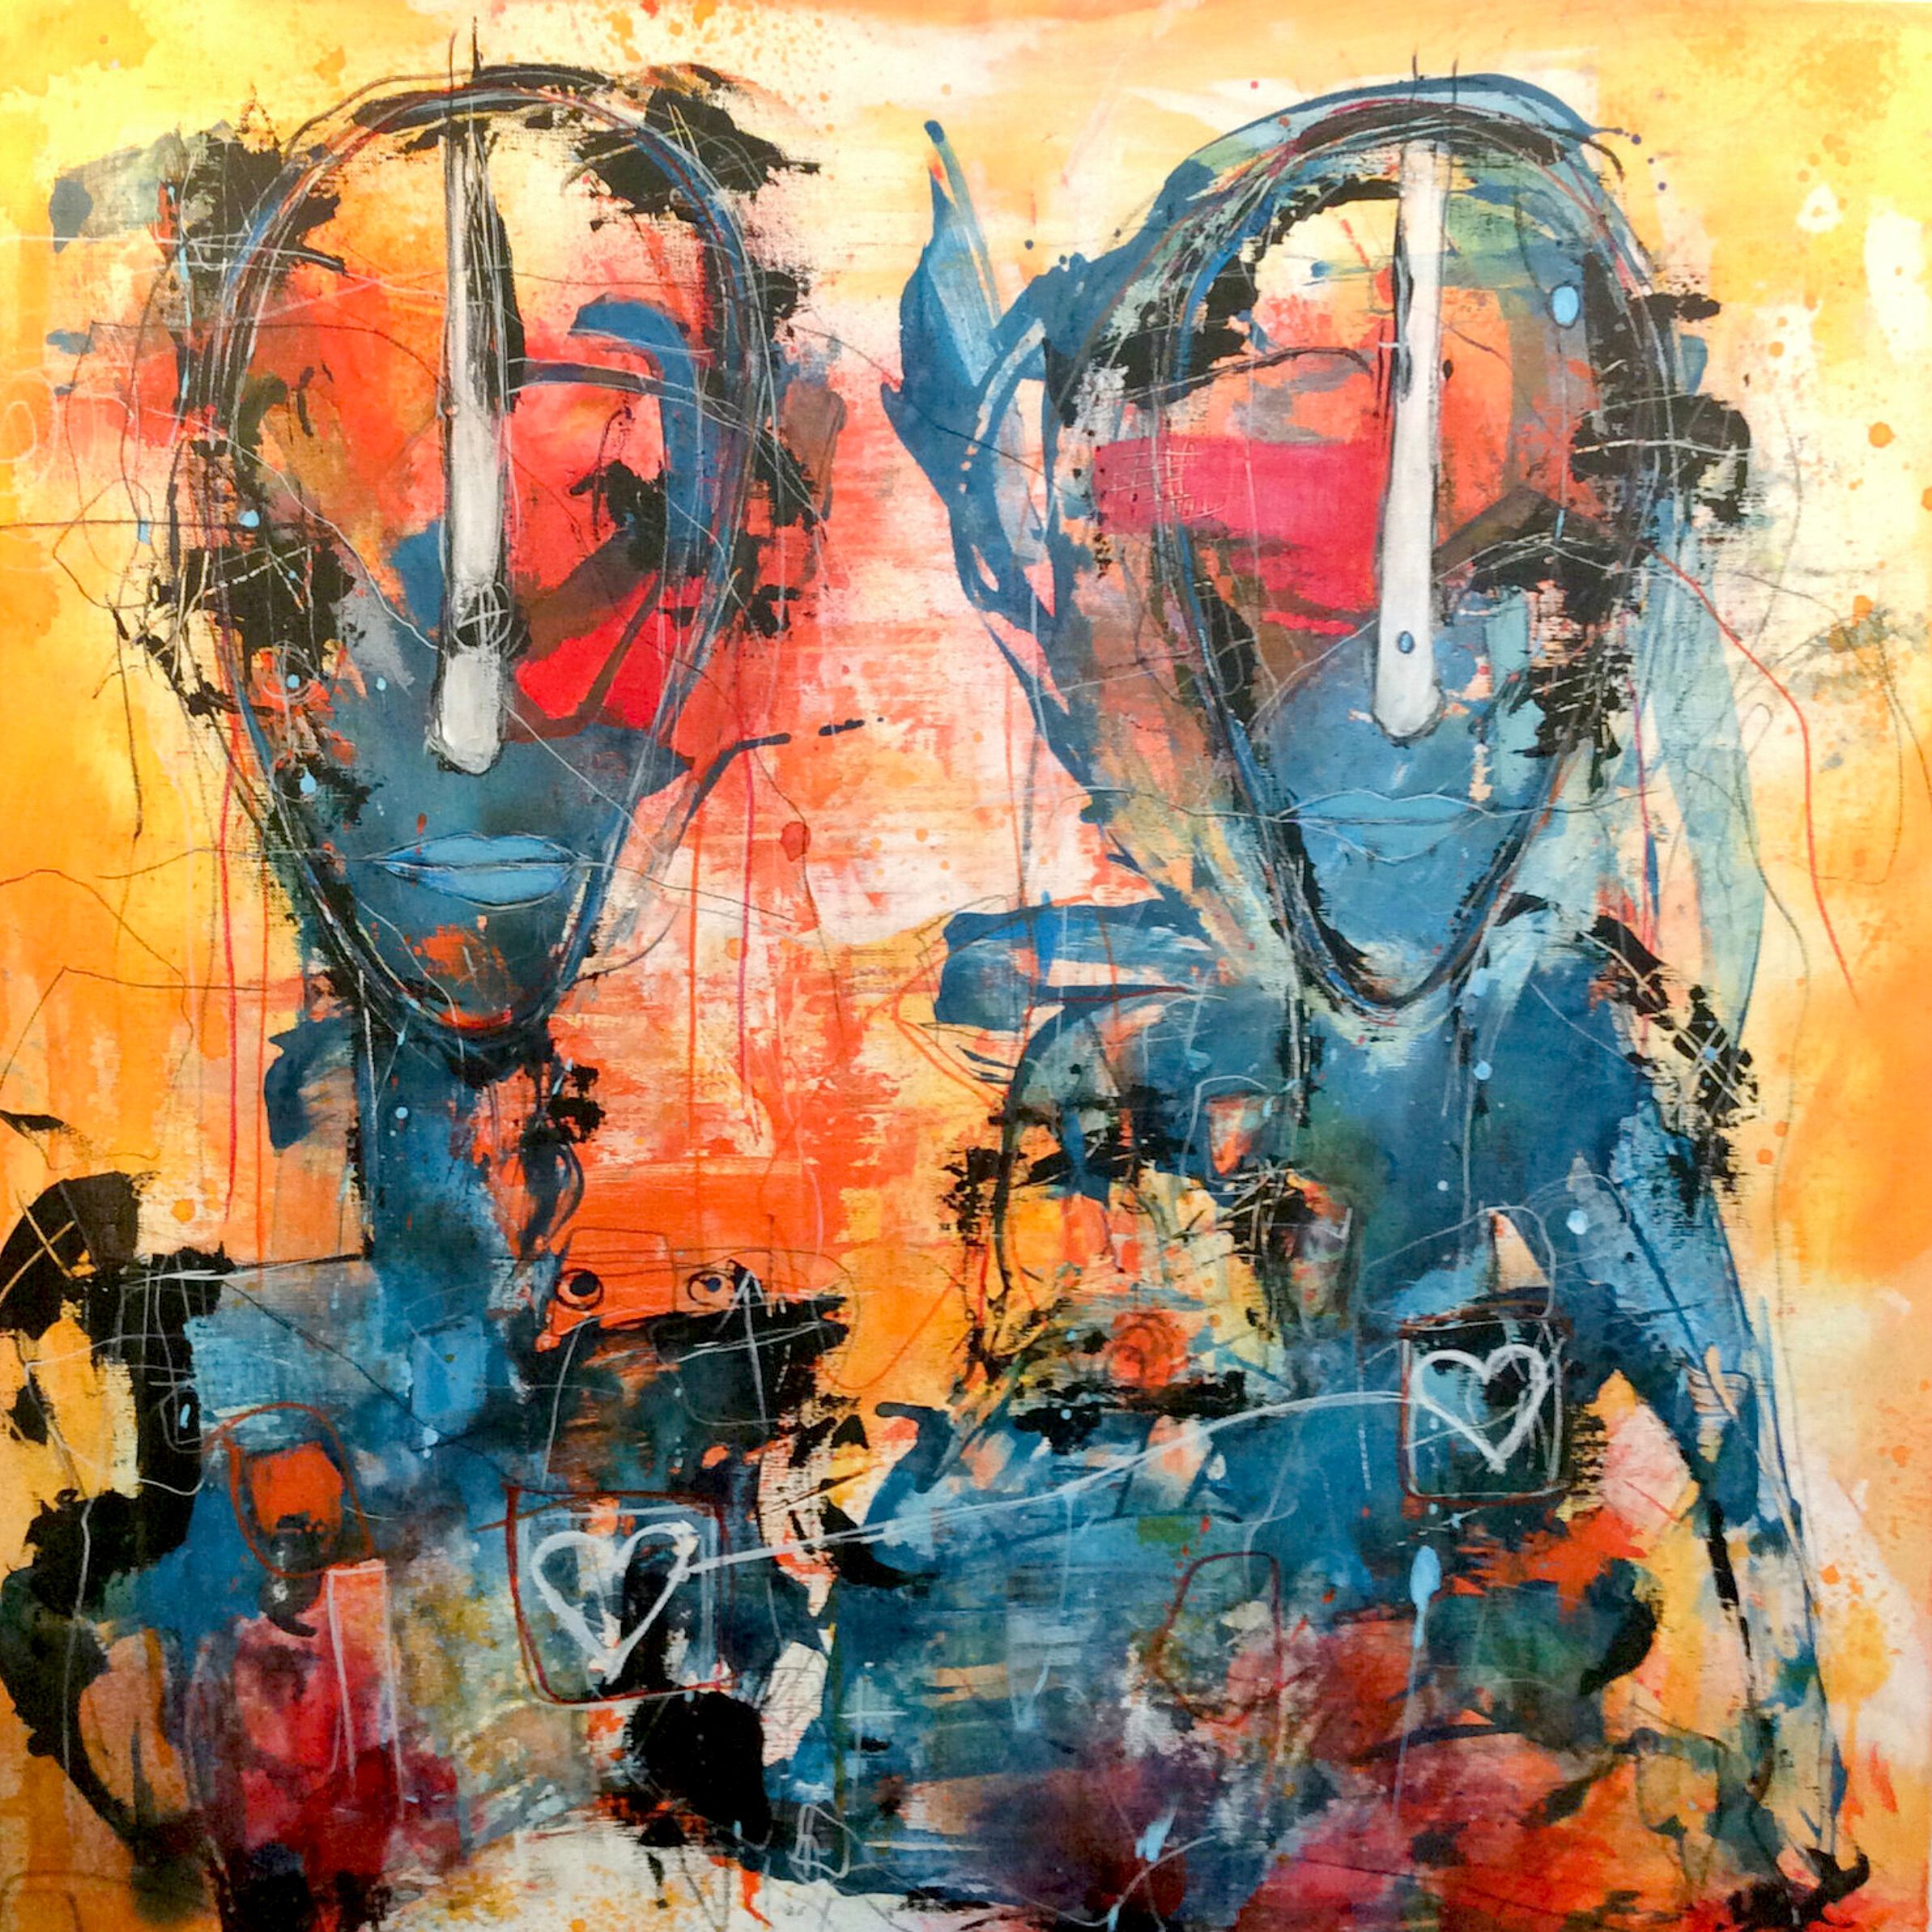 Il ritratto semi-astratto "Connected with the Heart" di Ilona Schmidt raffigura due persone/facce. La tavolozza dei colori del dipinto è composta da diverse tonalità di blu, giallo e rosso che si fondono armoniosamente tra loro.